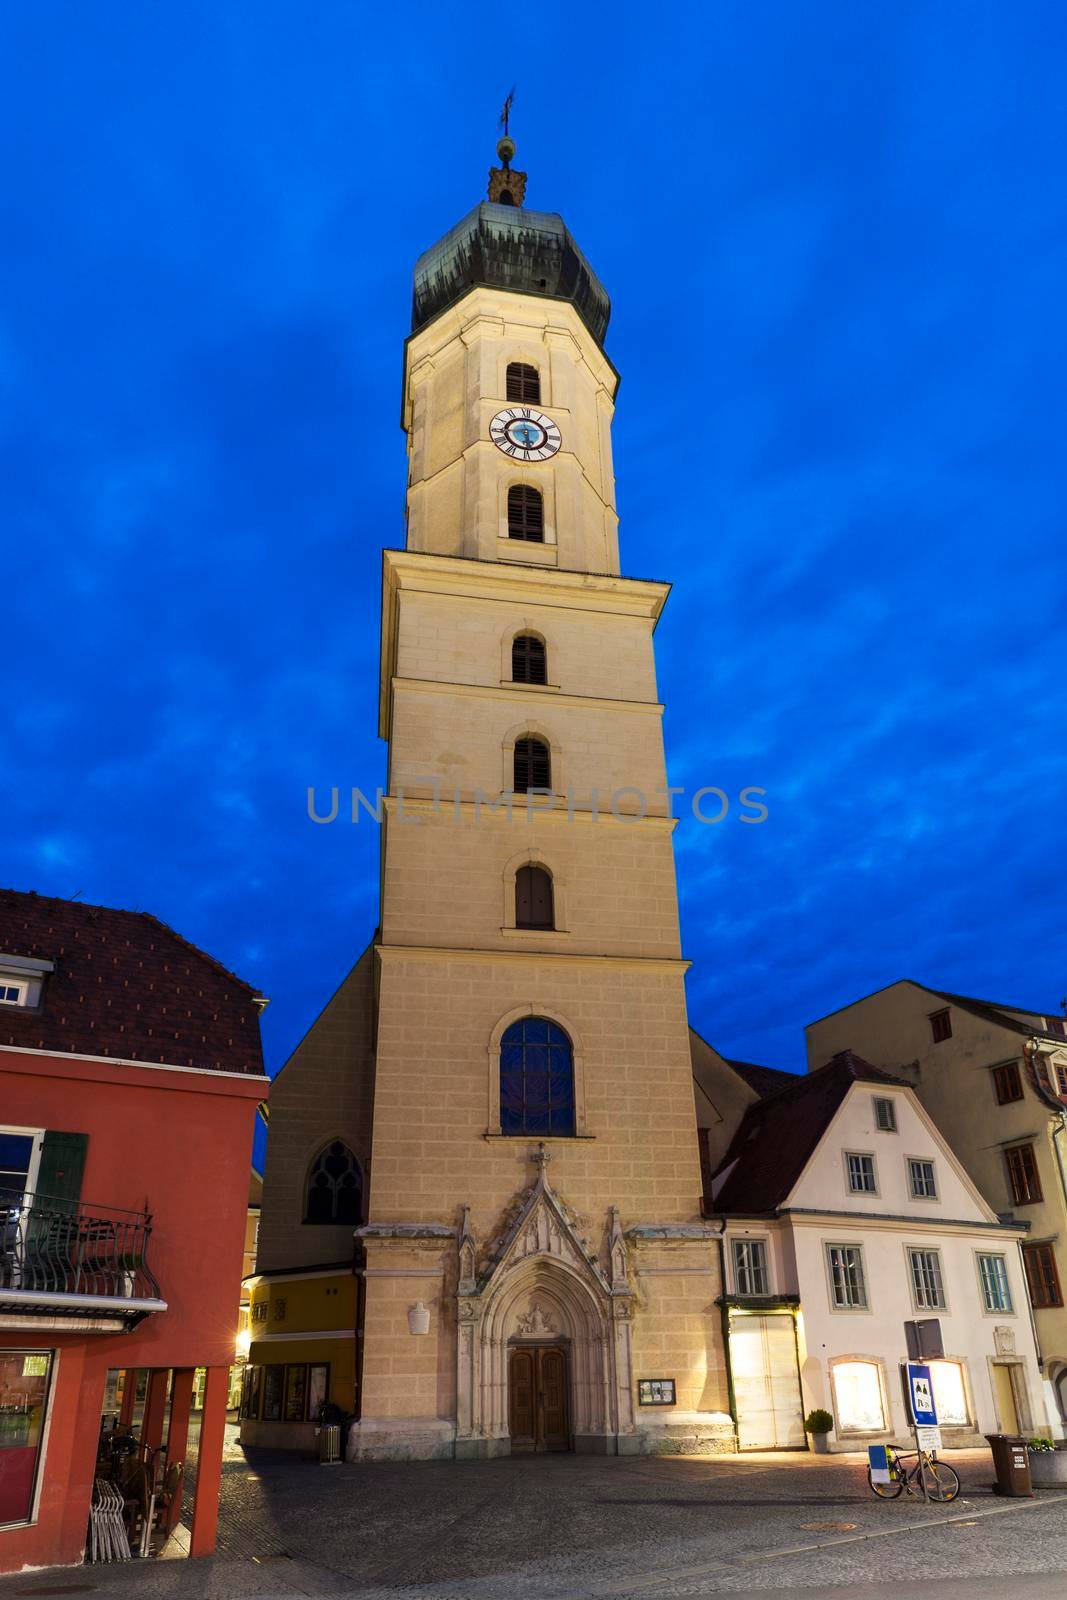 Franziskanerkirche in Graz at dawn by benkrut